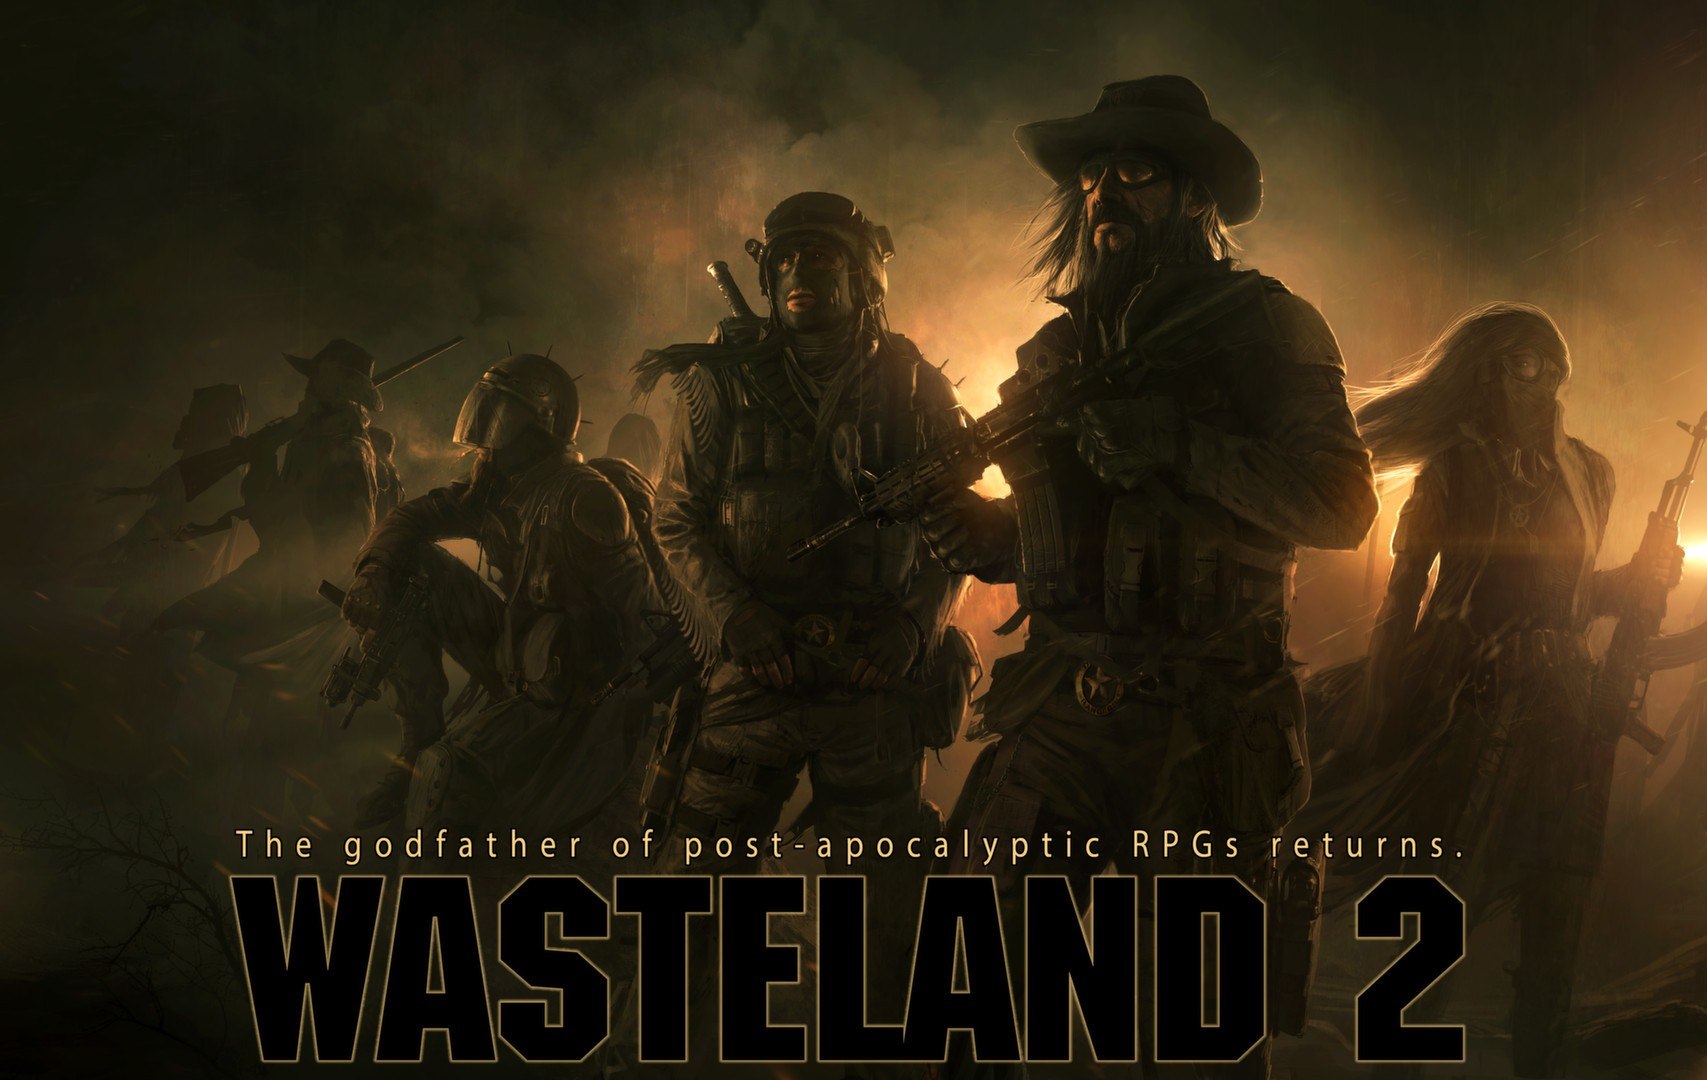 Wasteland 2: Director's Cut EU XBOX One CD Key 5.08 $